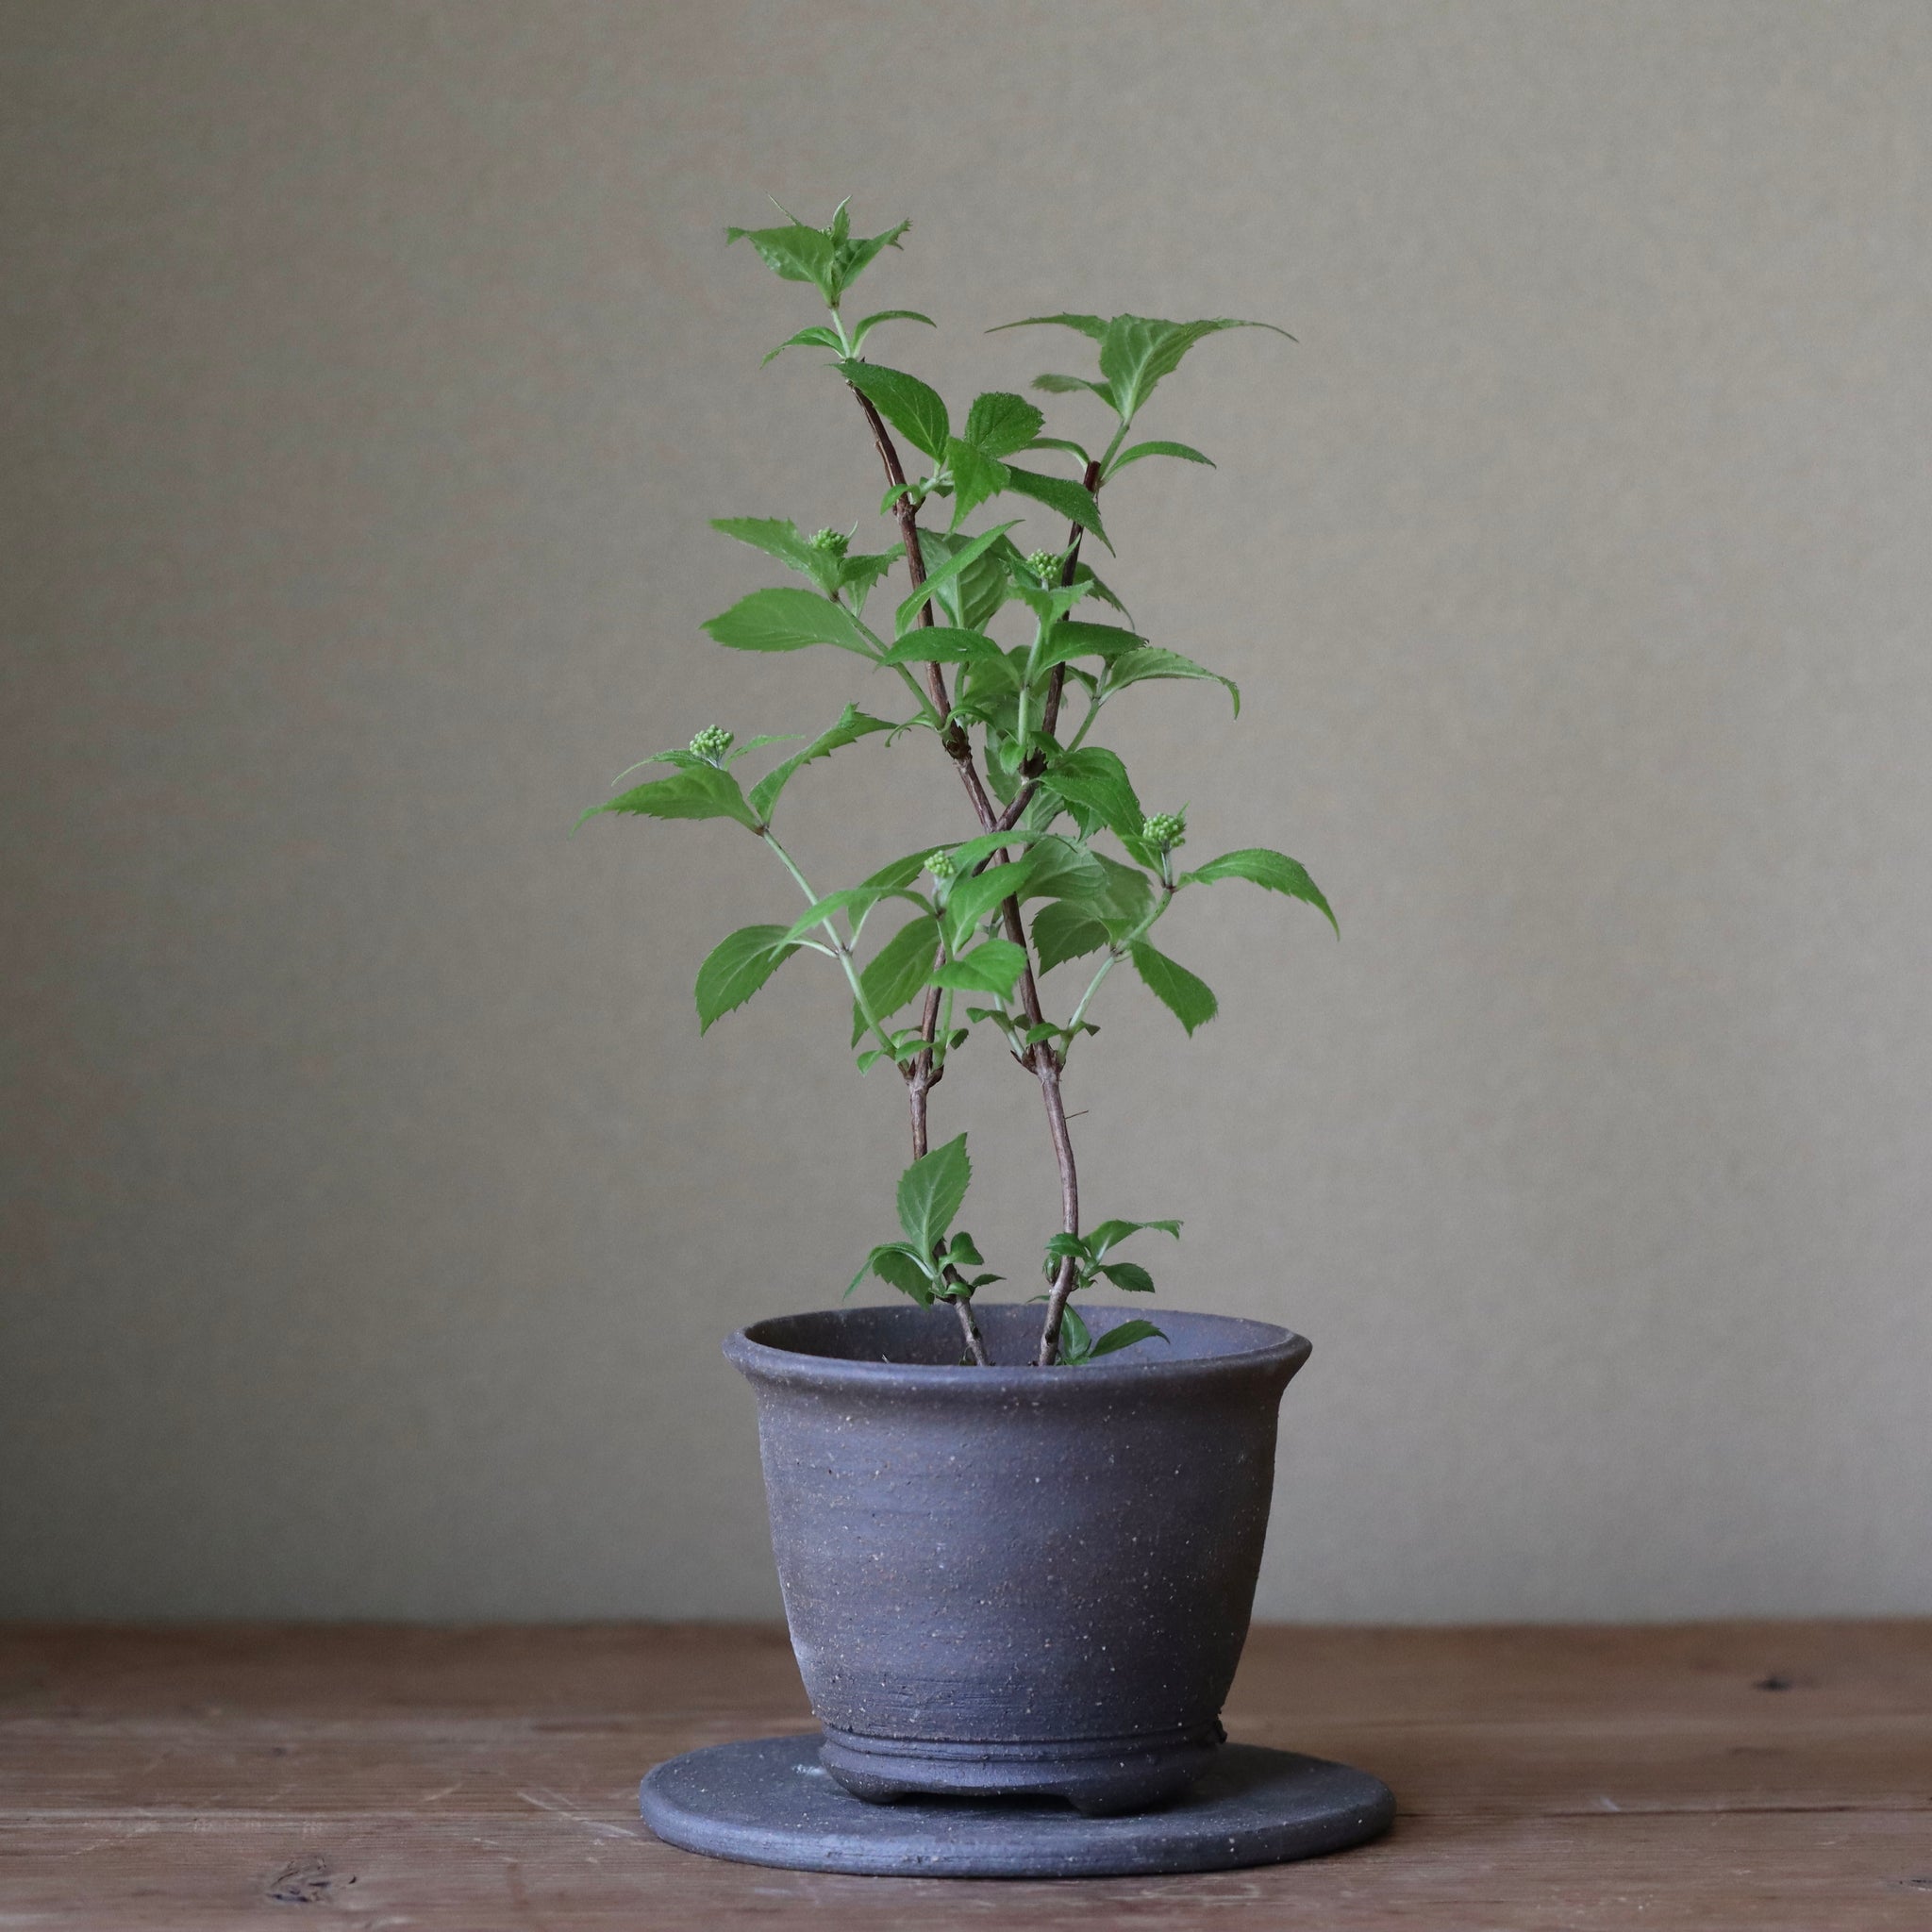 Hydrangea serrata ‘Iyo haku’ (Mountain hydrangea ‘Iyo haku’ yama ajisai ‘Iyo haku’)